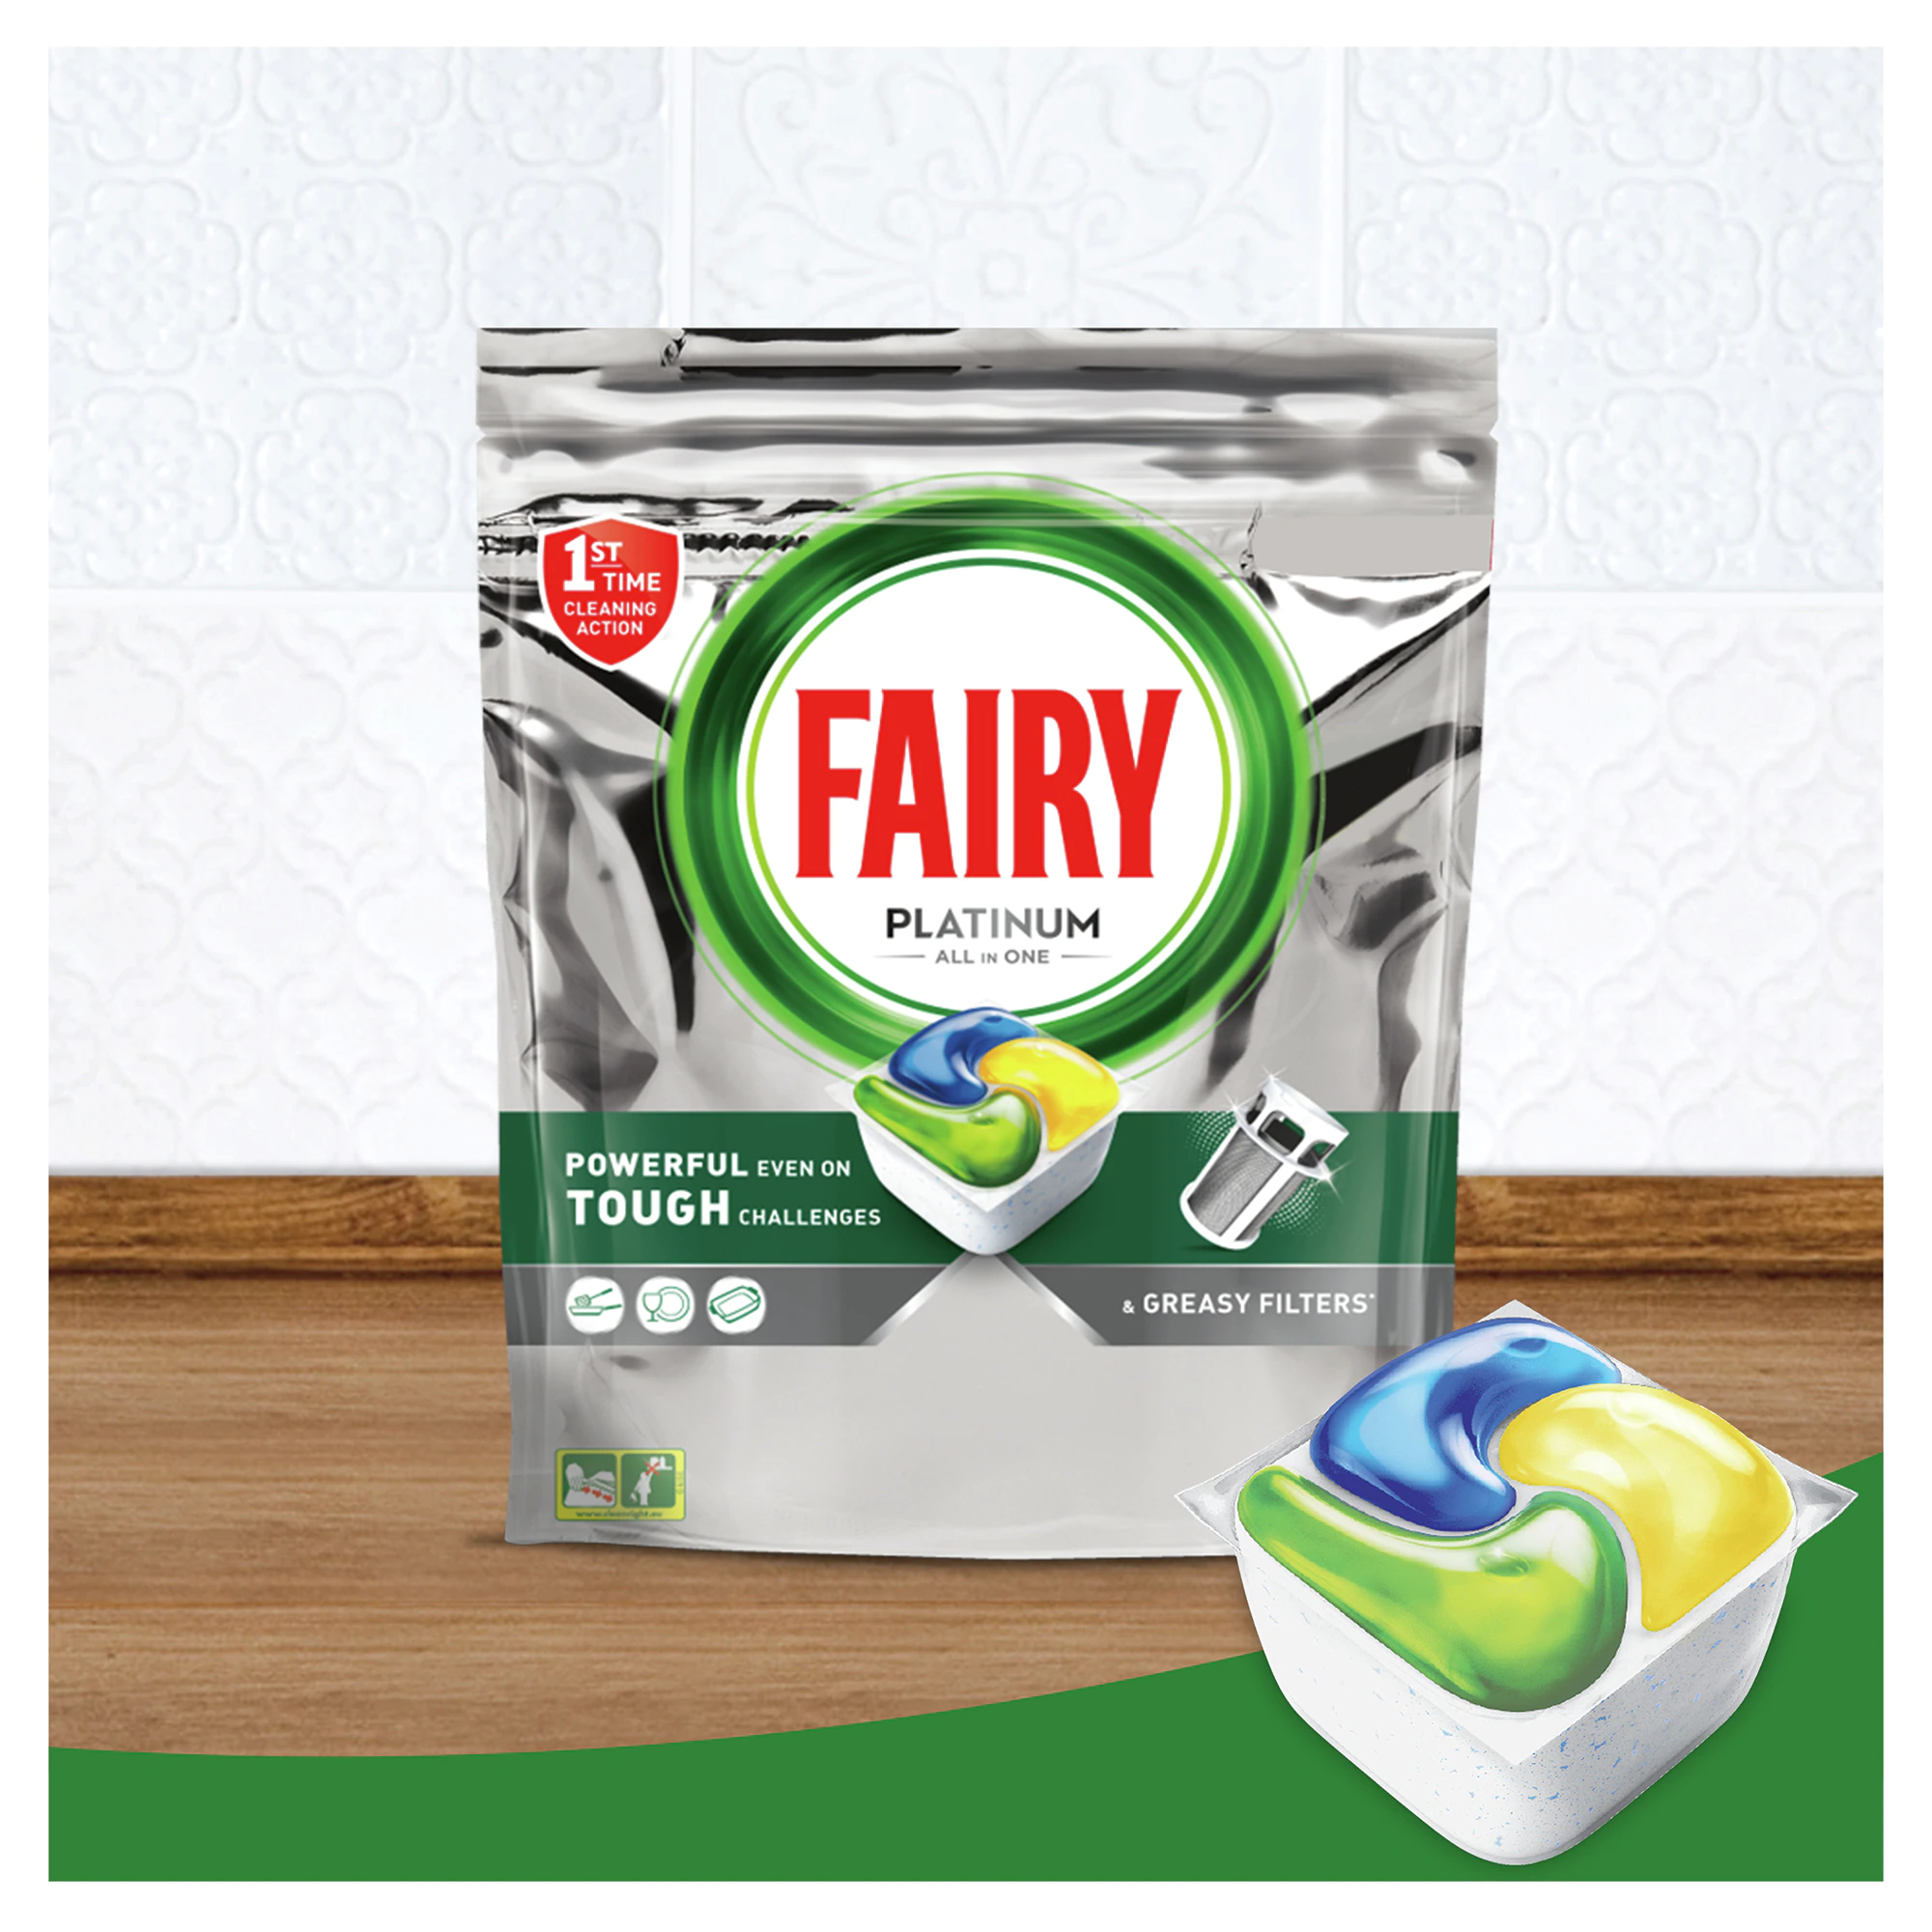 Pachet detergent pentru masina de spalat vase Fairy Platinum, 2 x 100 spalari [2]